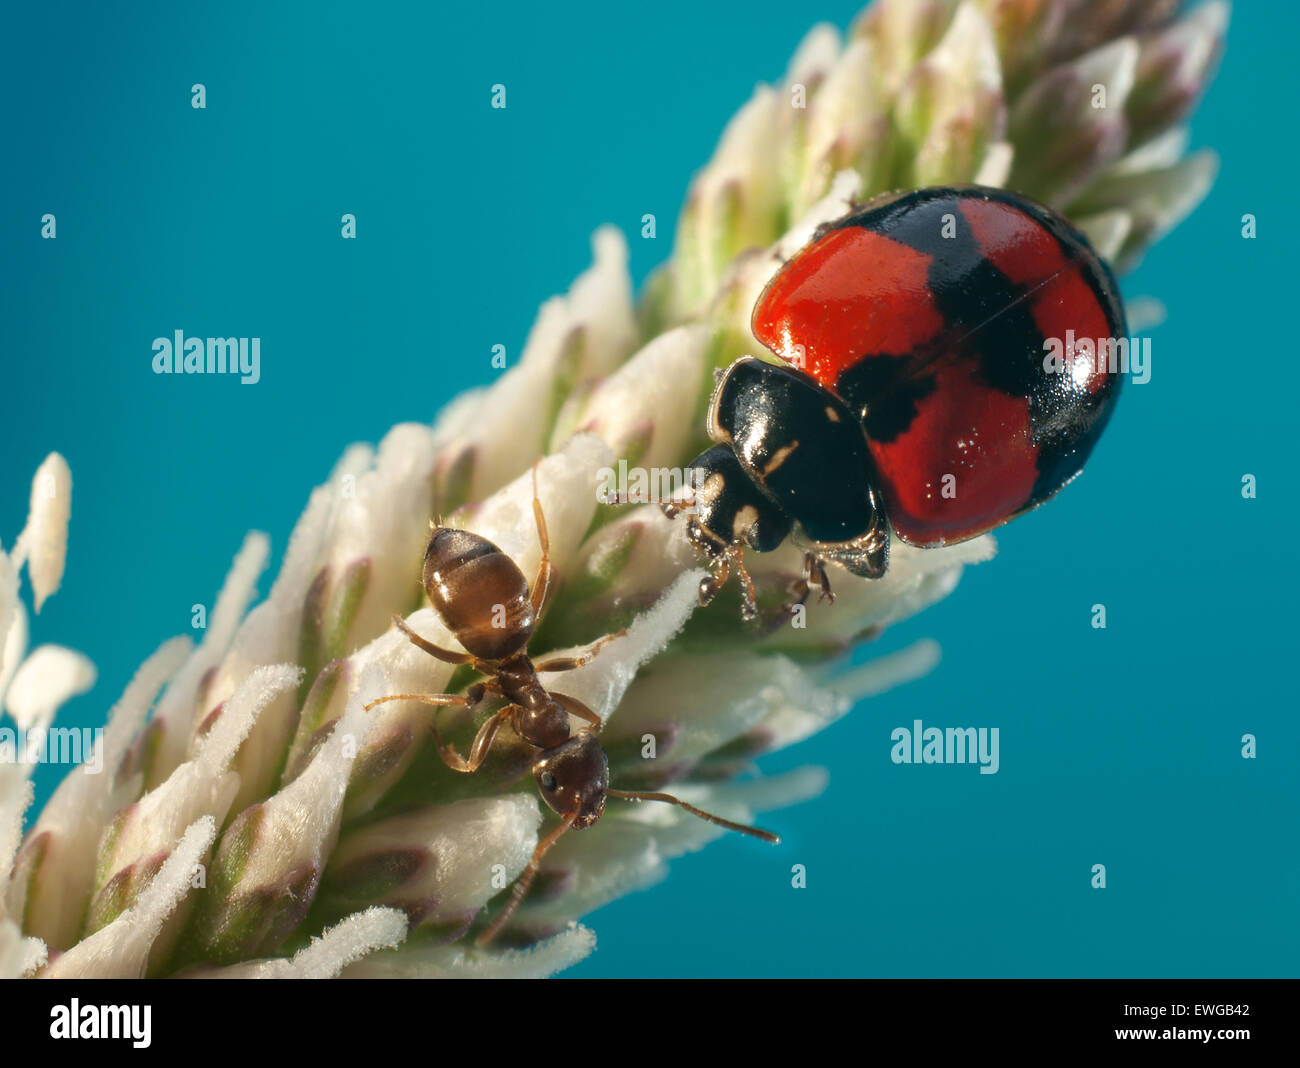 Ladybug datoteka (Adalia bipunctata),(Coccinellidae) soddisfatte con ant (Lasius fuliginosus). Foto Stock